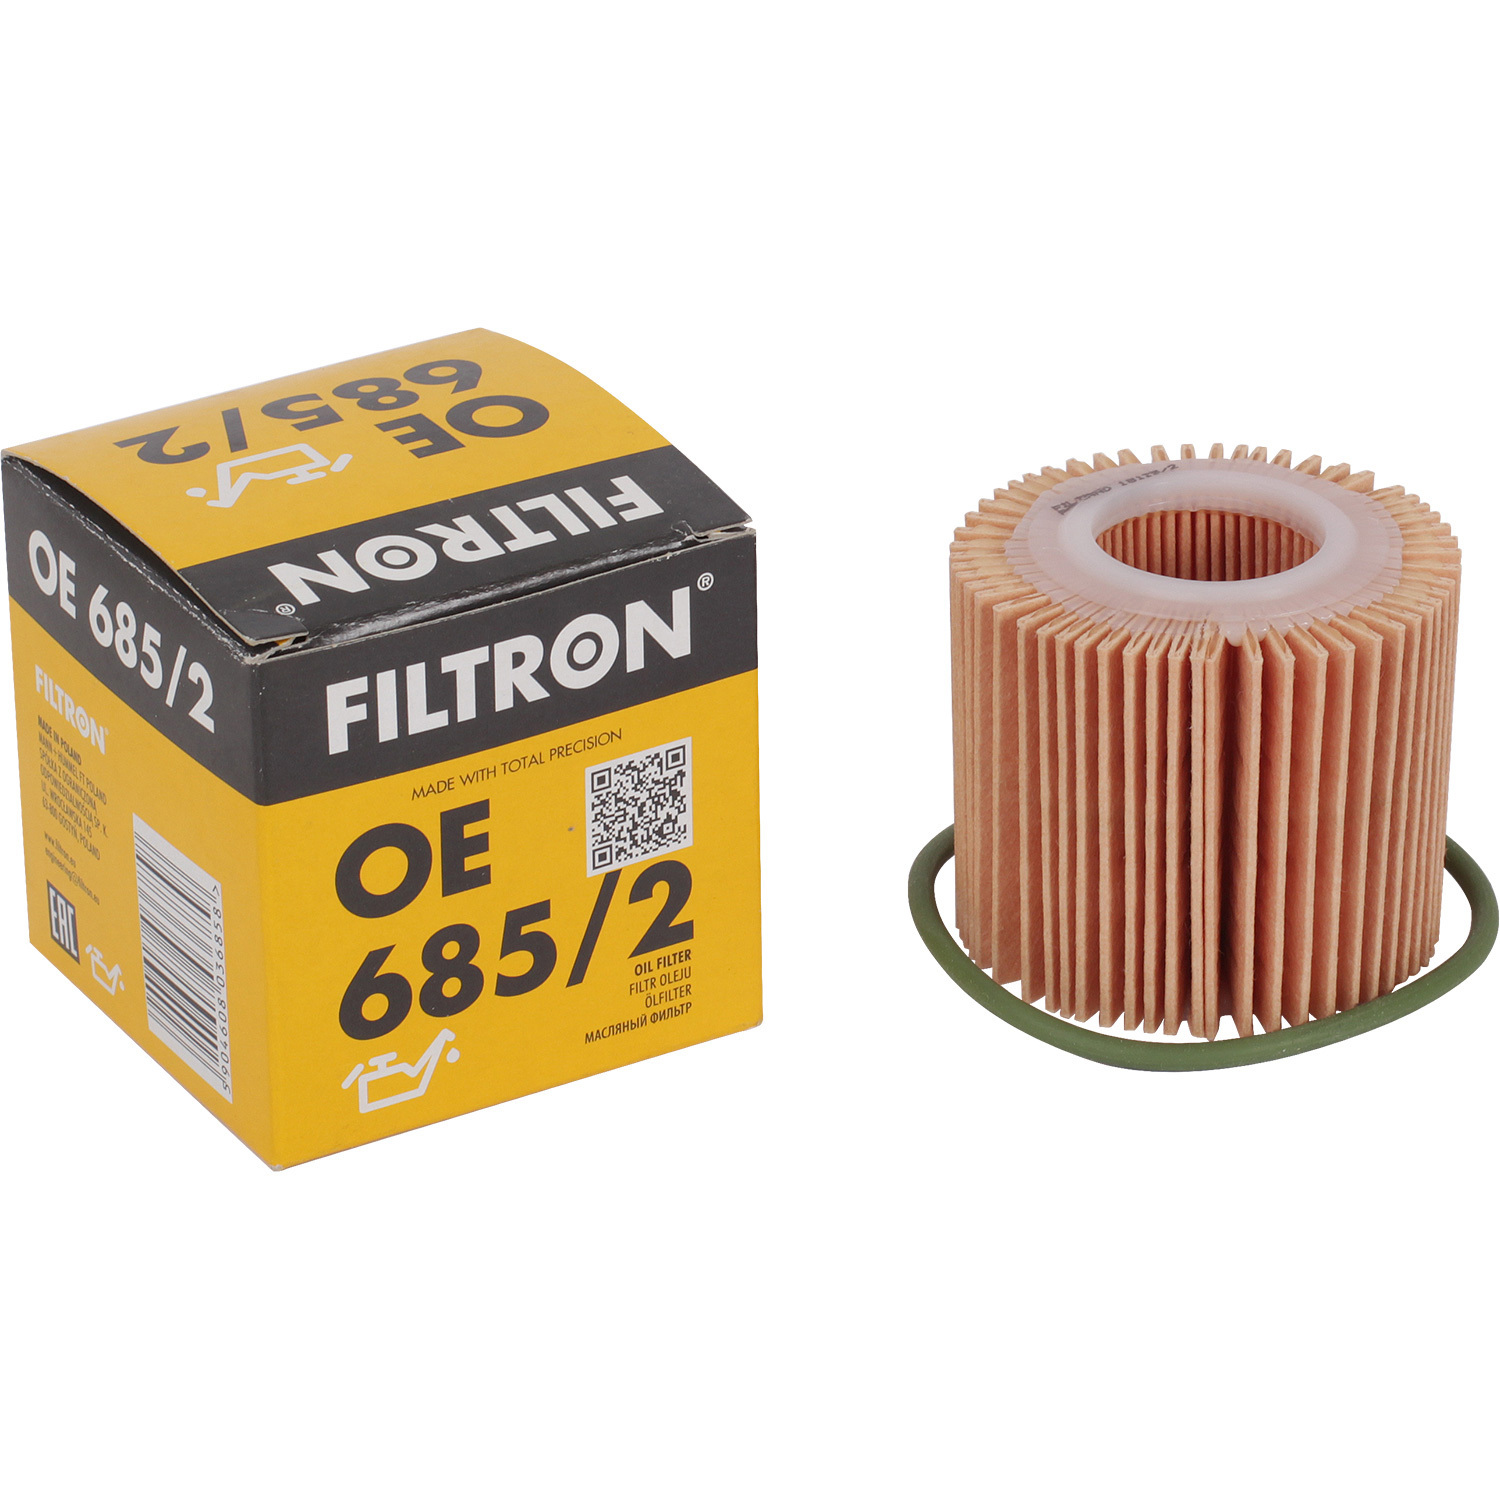 фильтры filtron фильтр масляный filtron op520 Фильтры Filtron Фильтр масляный Filtron OE6852